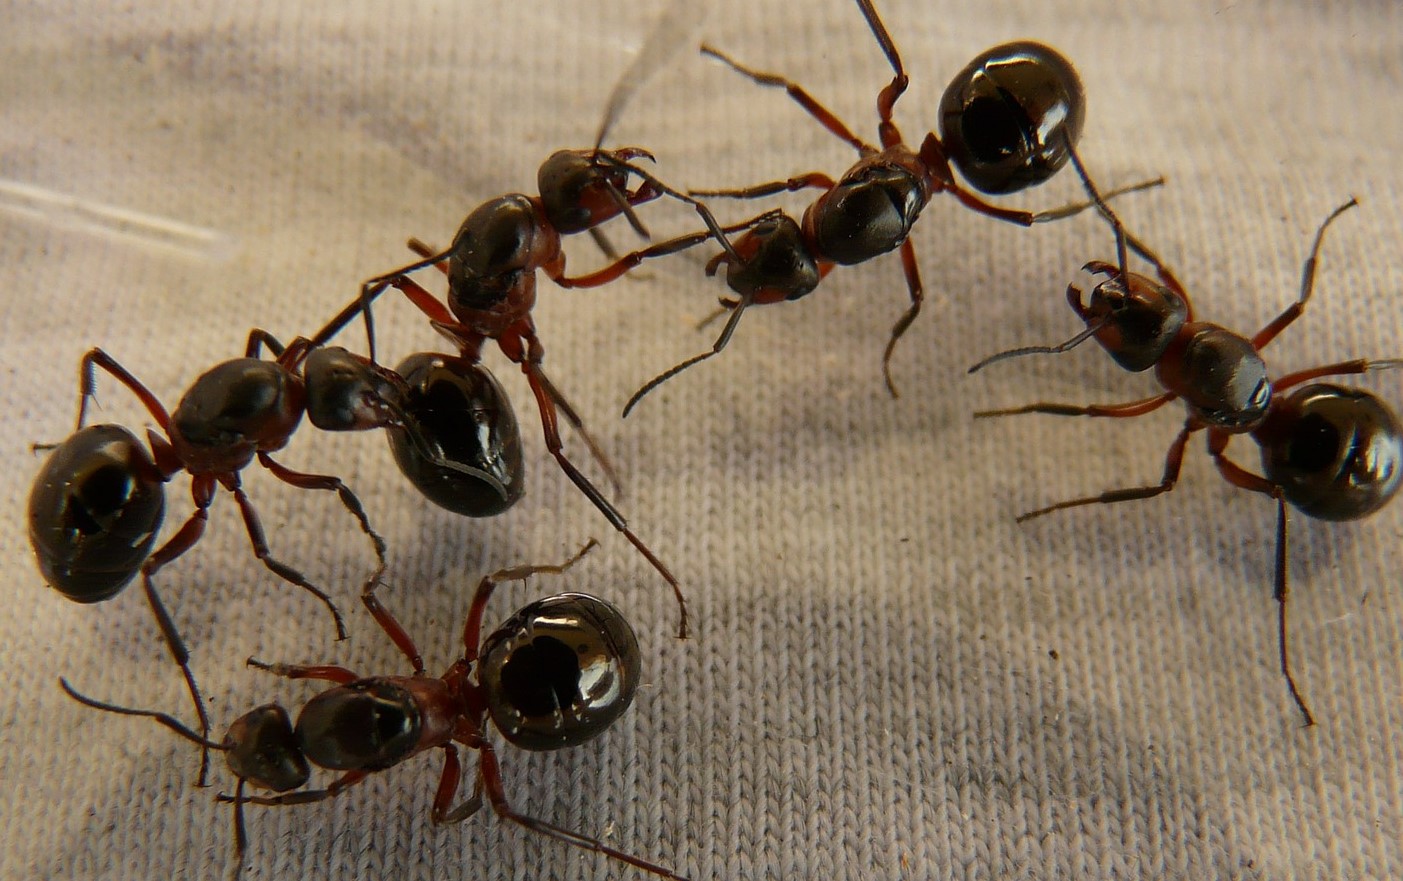  حلم الصراصير والنمل - تفسير الاحلام